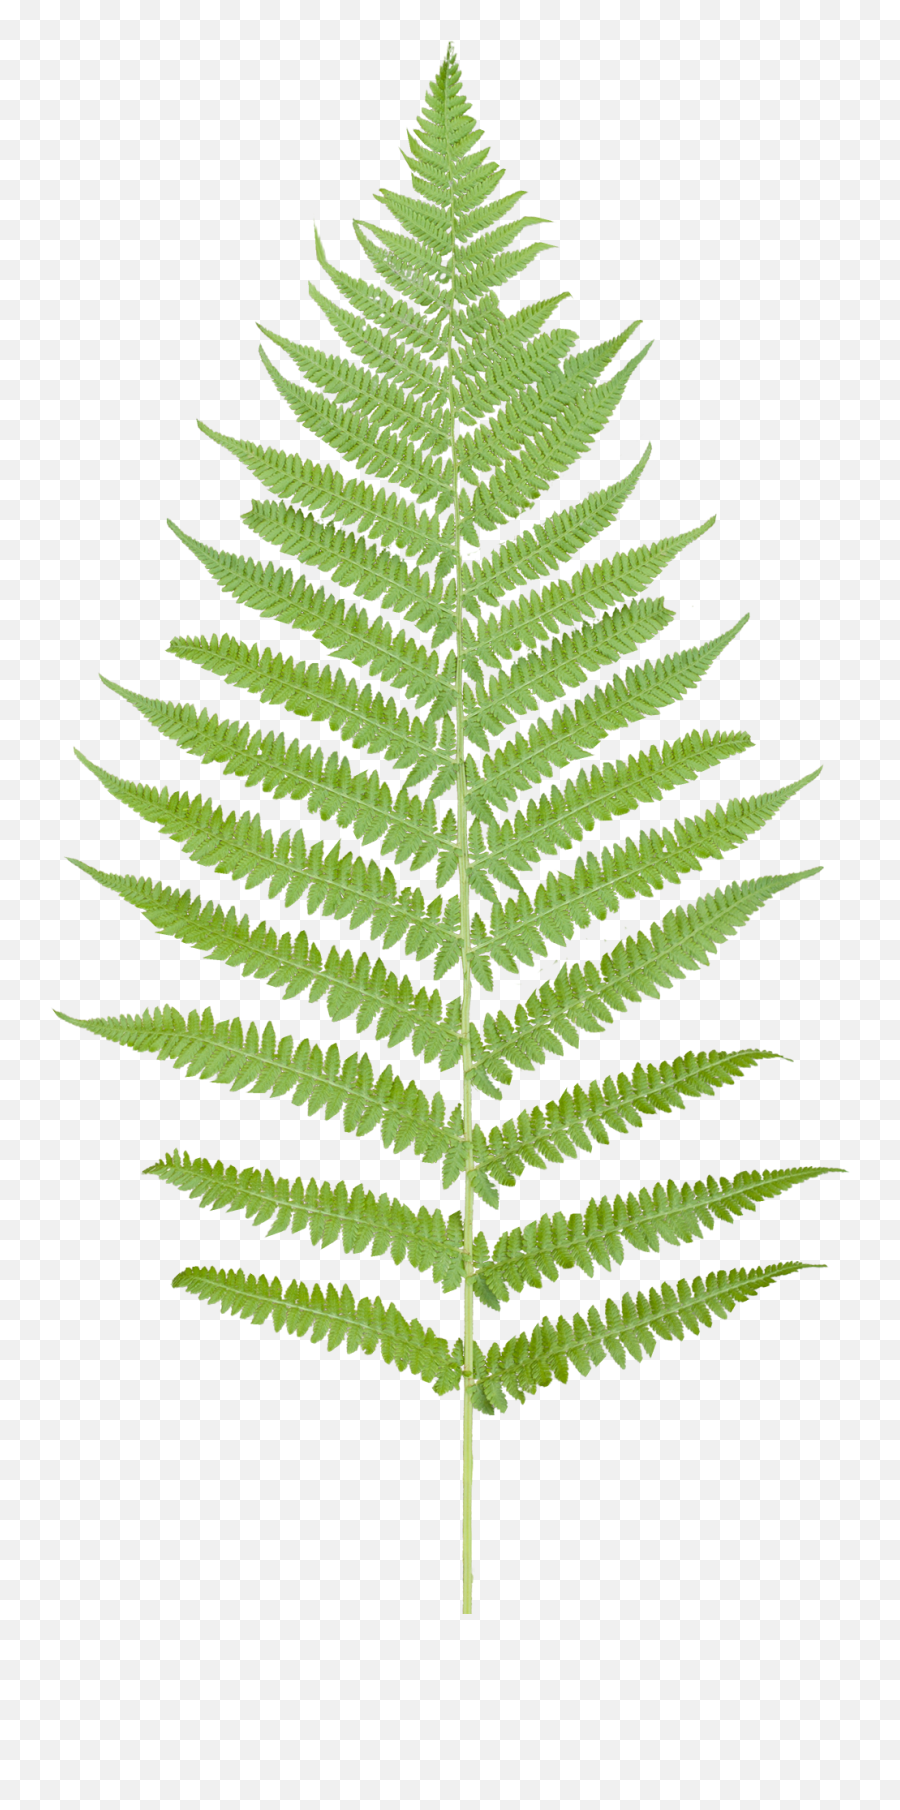 Fern Leaf No Background - Transparent Background Fern Clipart Png,Vegetation Png